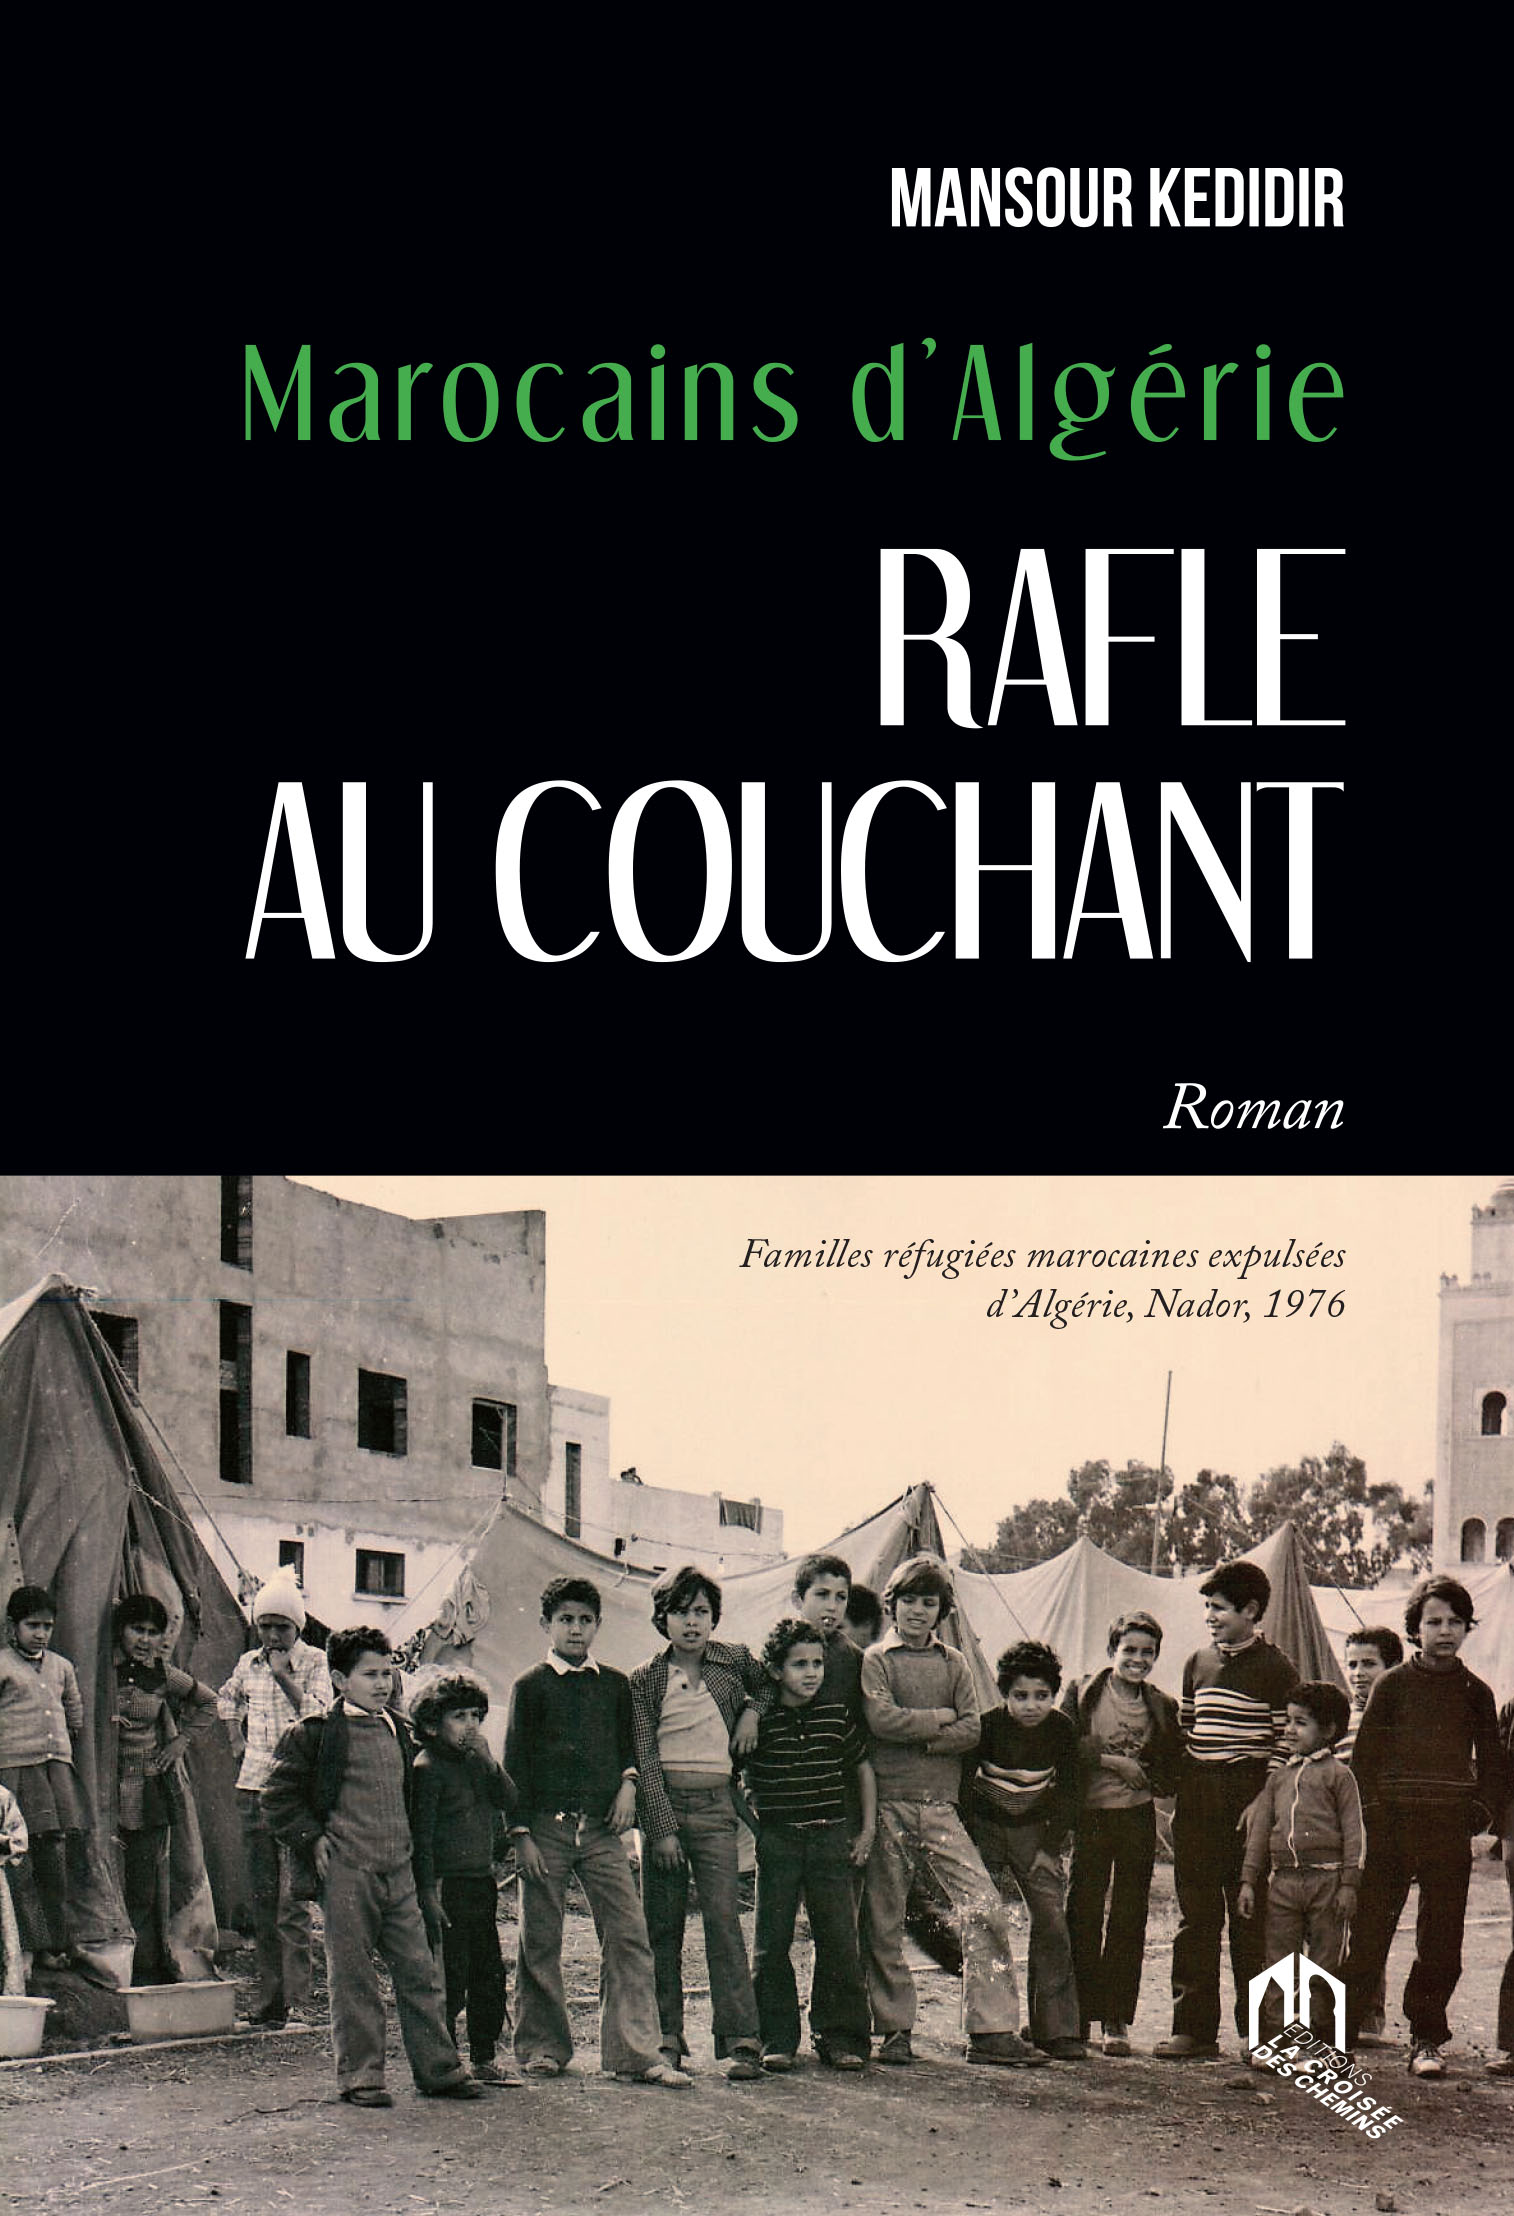 MAROCAINS D'ALGÉRIE. RAFLE AU COUCHANT